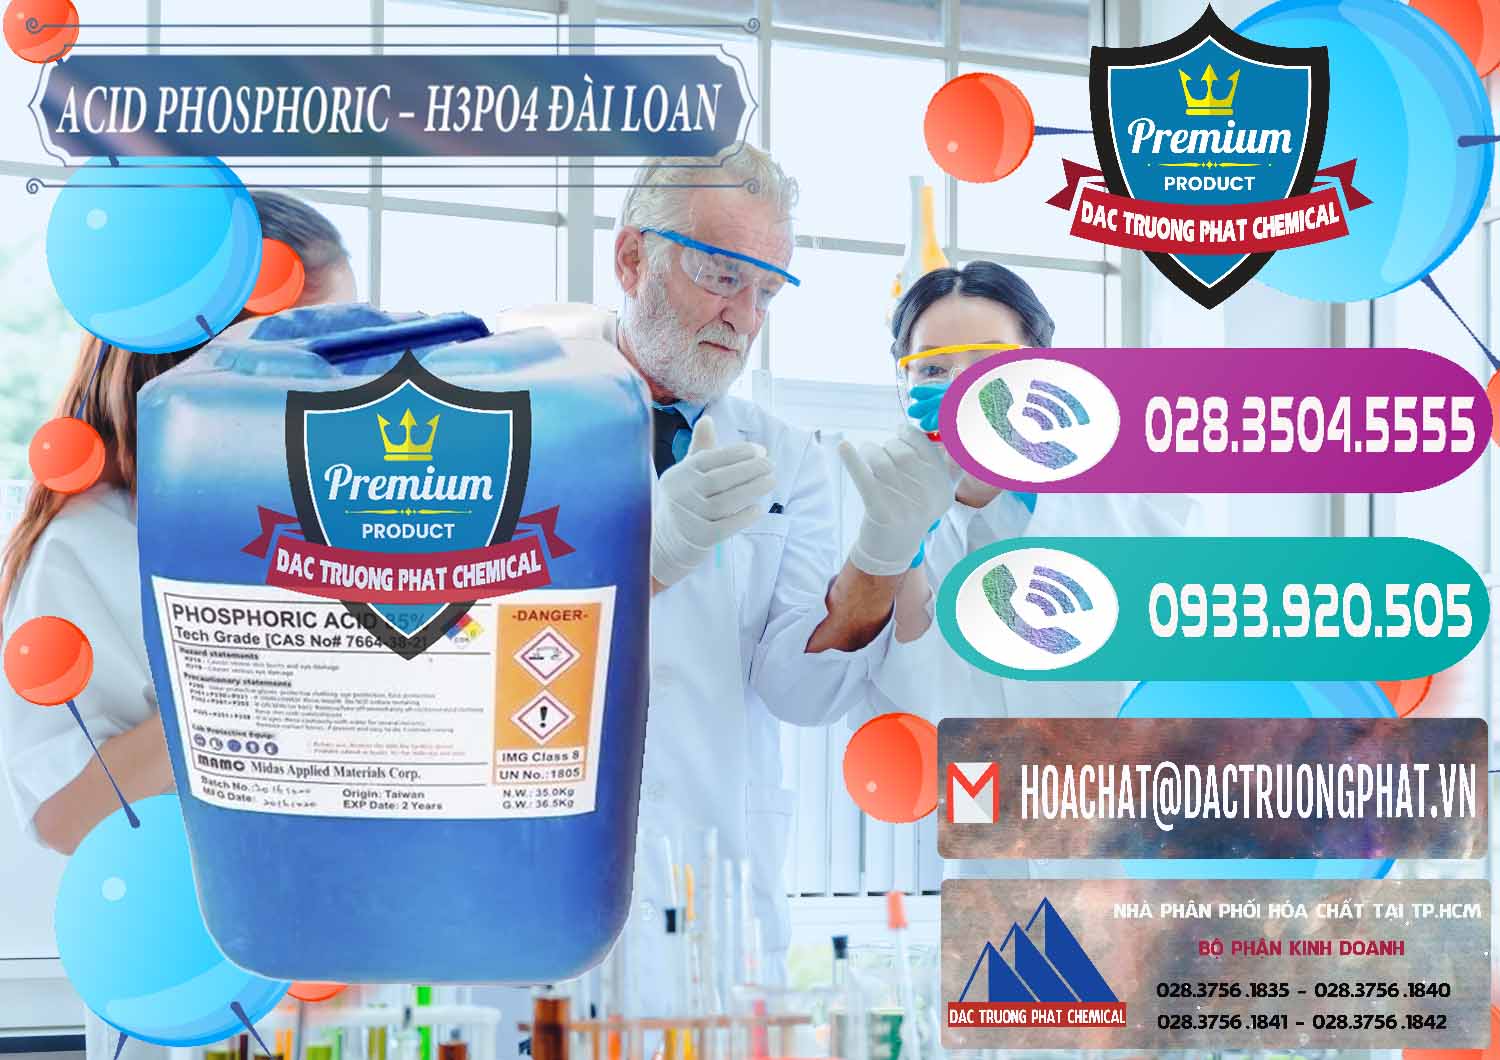 Cty chuyên cung cấp _ bán Axit Phosphoric - Acid Phosphoric H3PO4 85% Đài Loan Taiwan - 0351 - Nơi phân phối ( bán ) hóa chất tại TP.HCM - hoachatxulynuoc.com